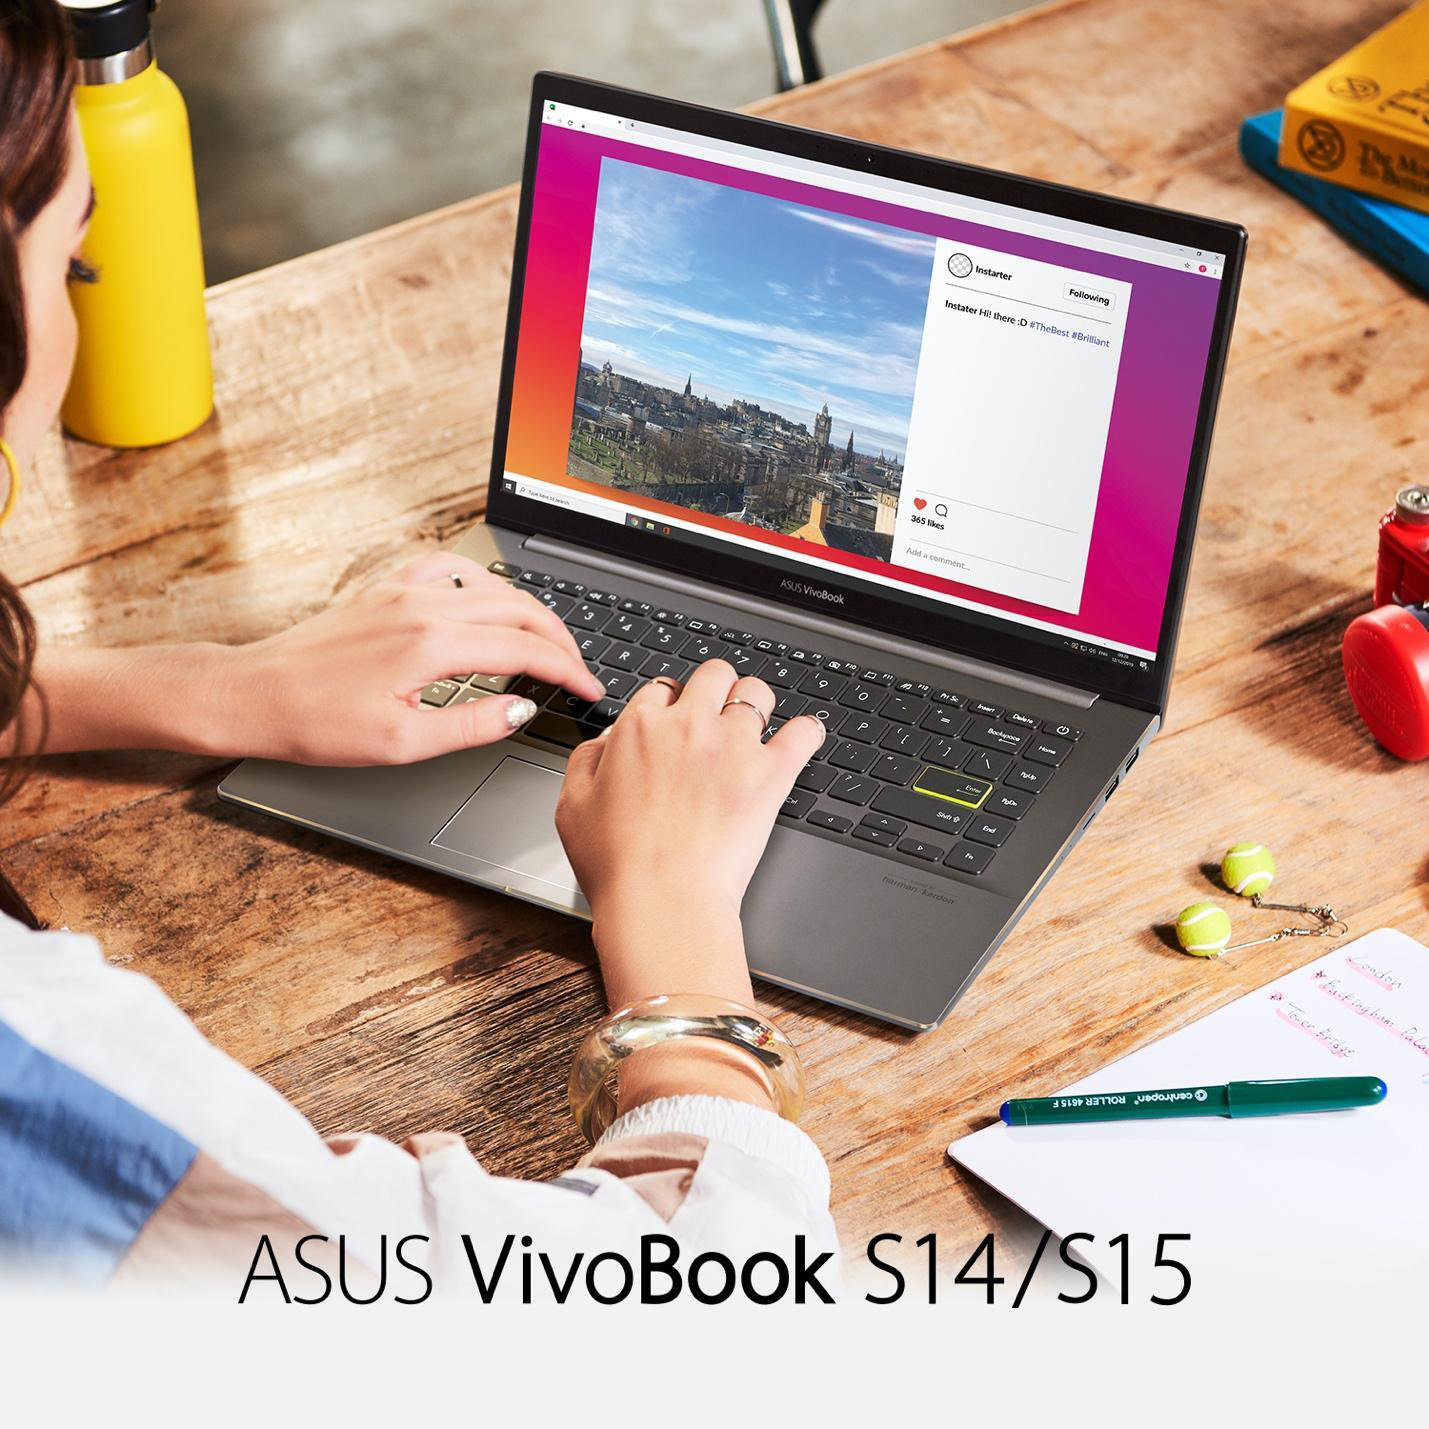 ASUS VivoBook đáp ứng nhu cầu giới trẻ mùa giãn cách - Ảnh 1.